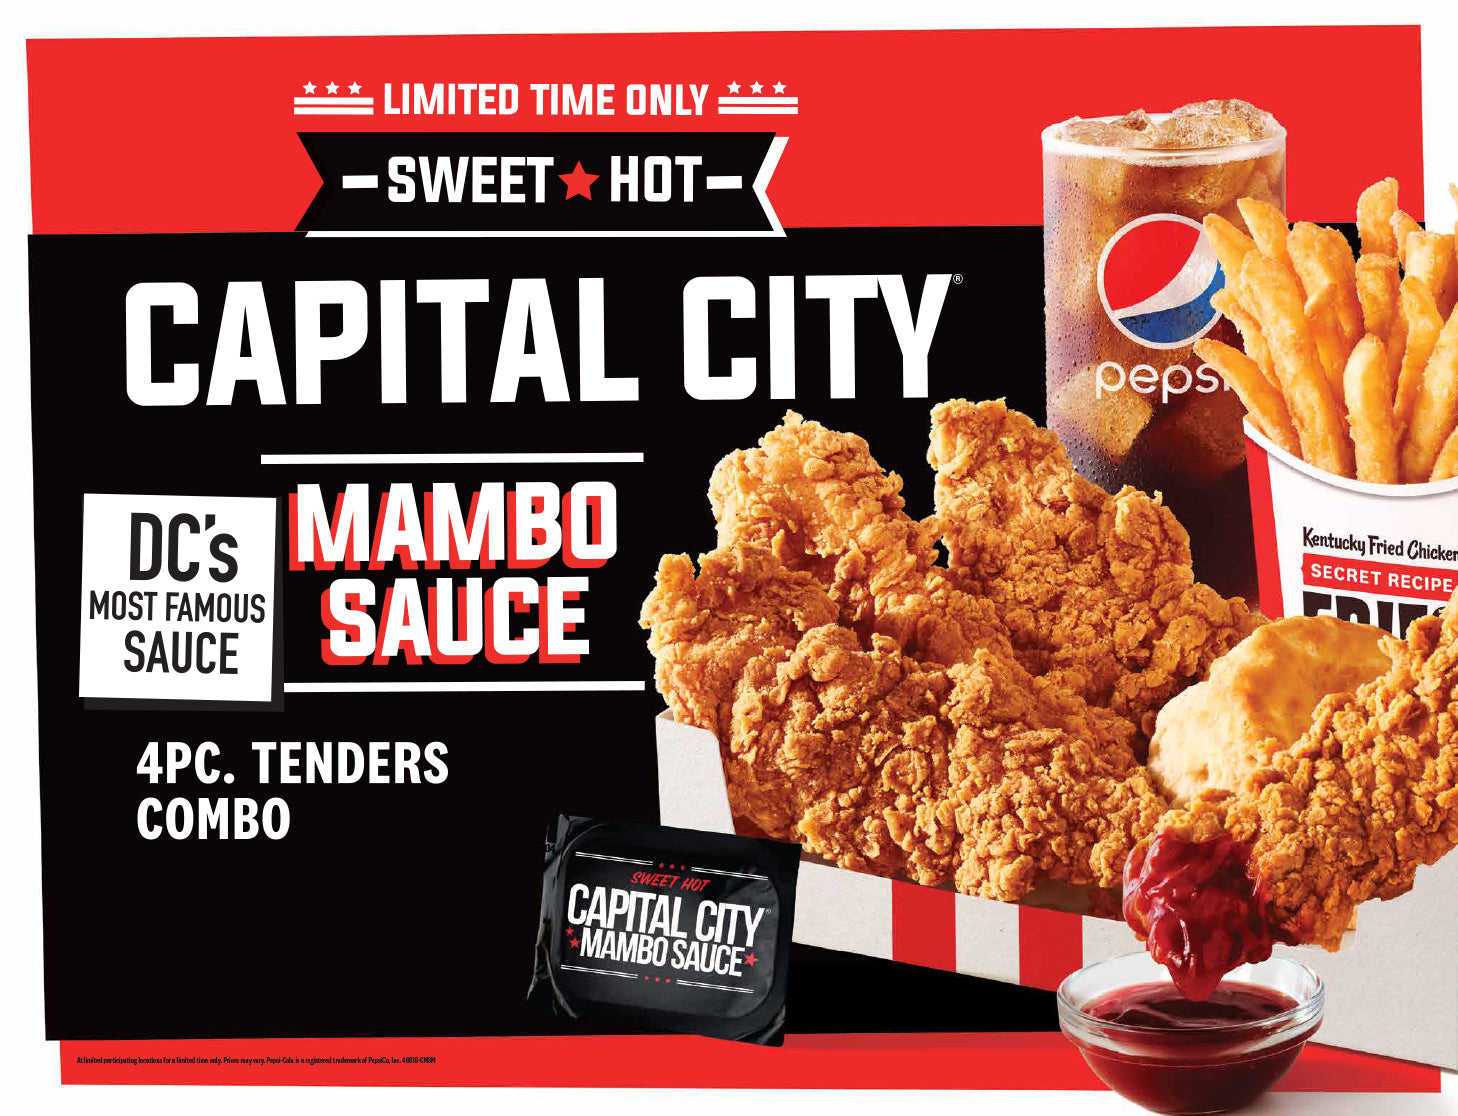 Get Mambo Sauce at select KFC locations